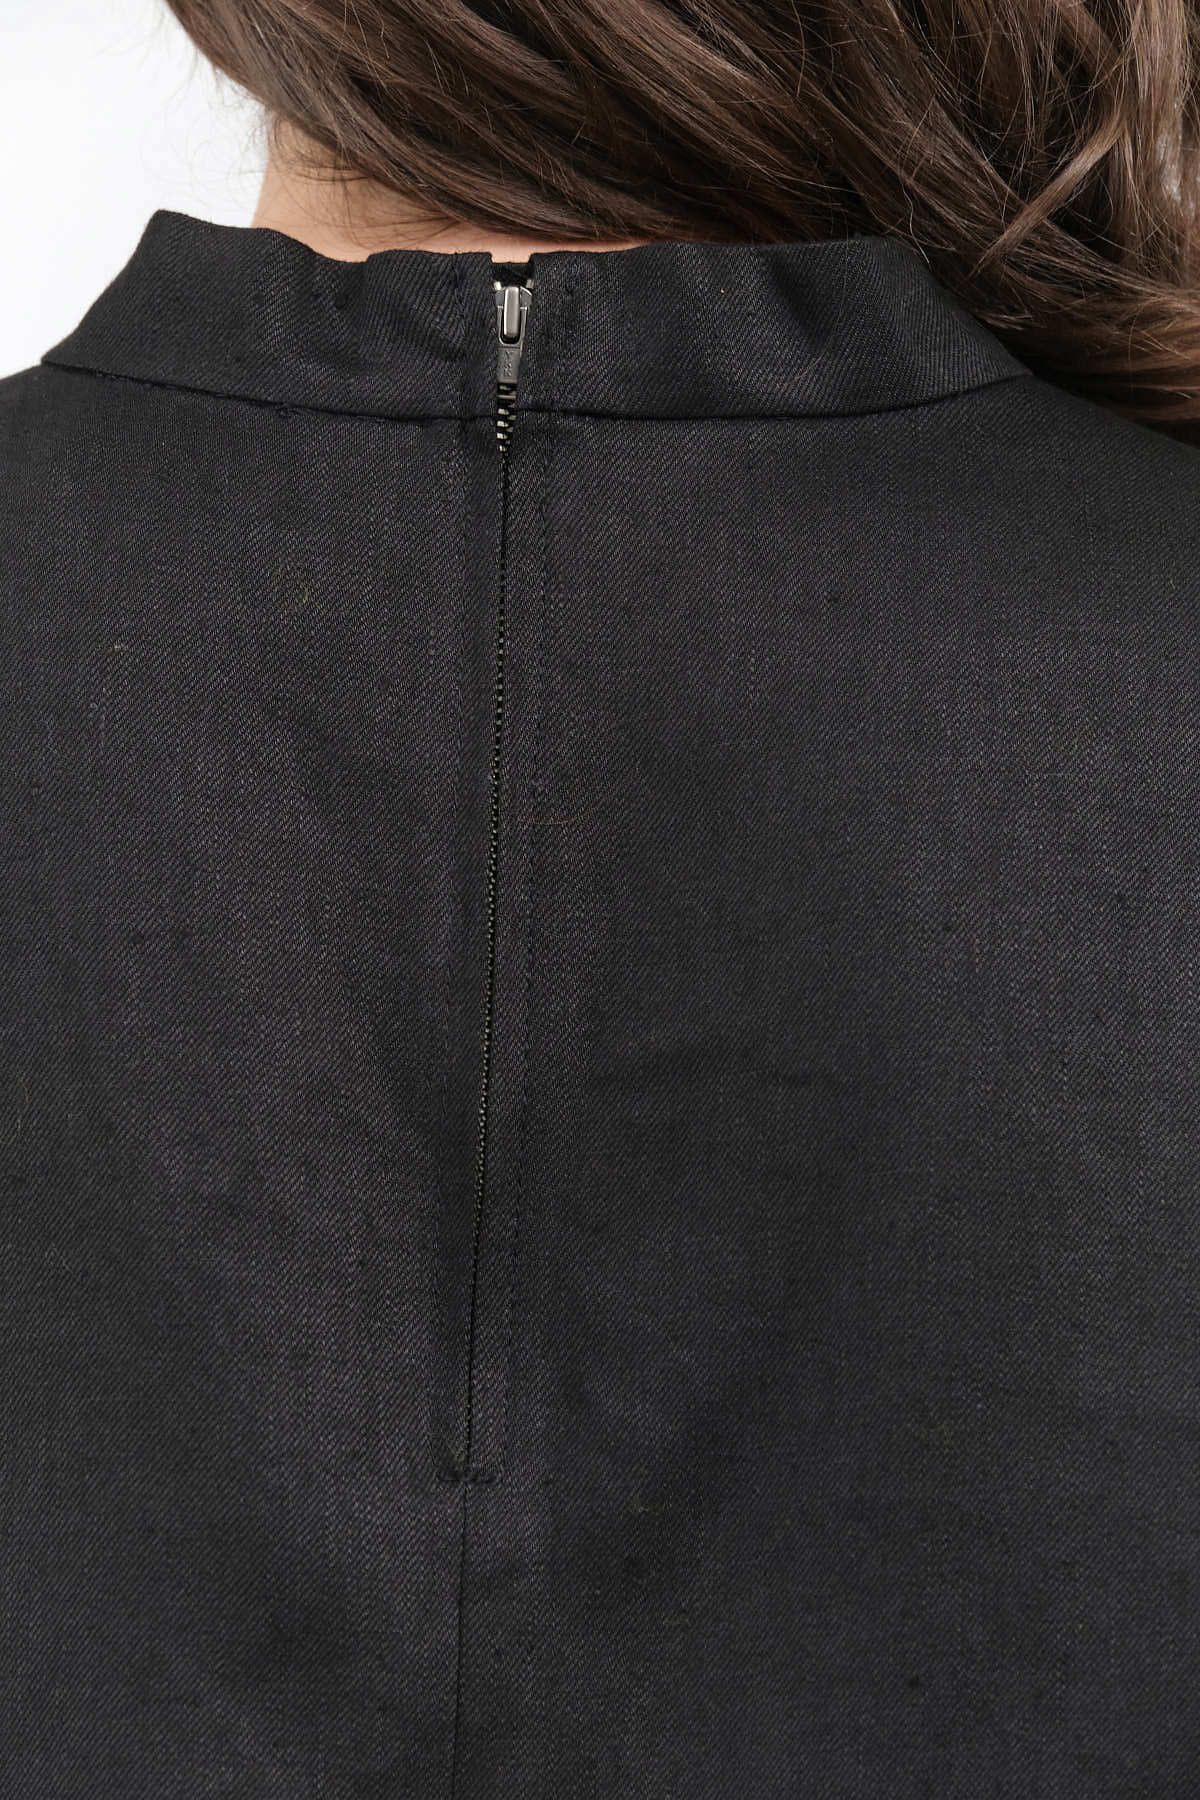 Zipper view of Bacchus Top in Black